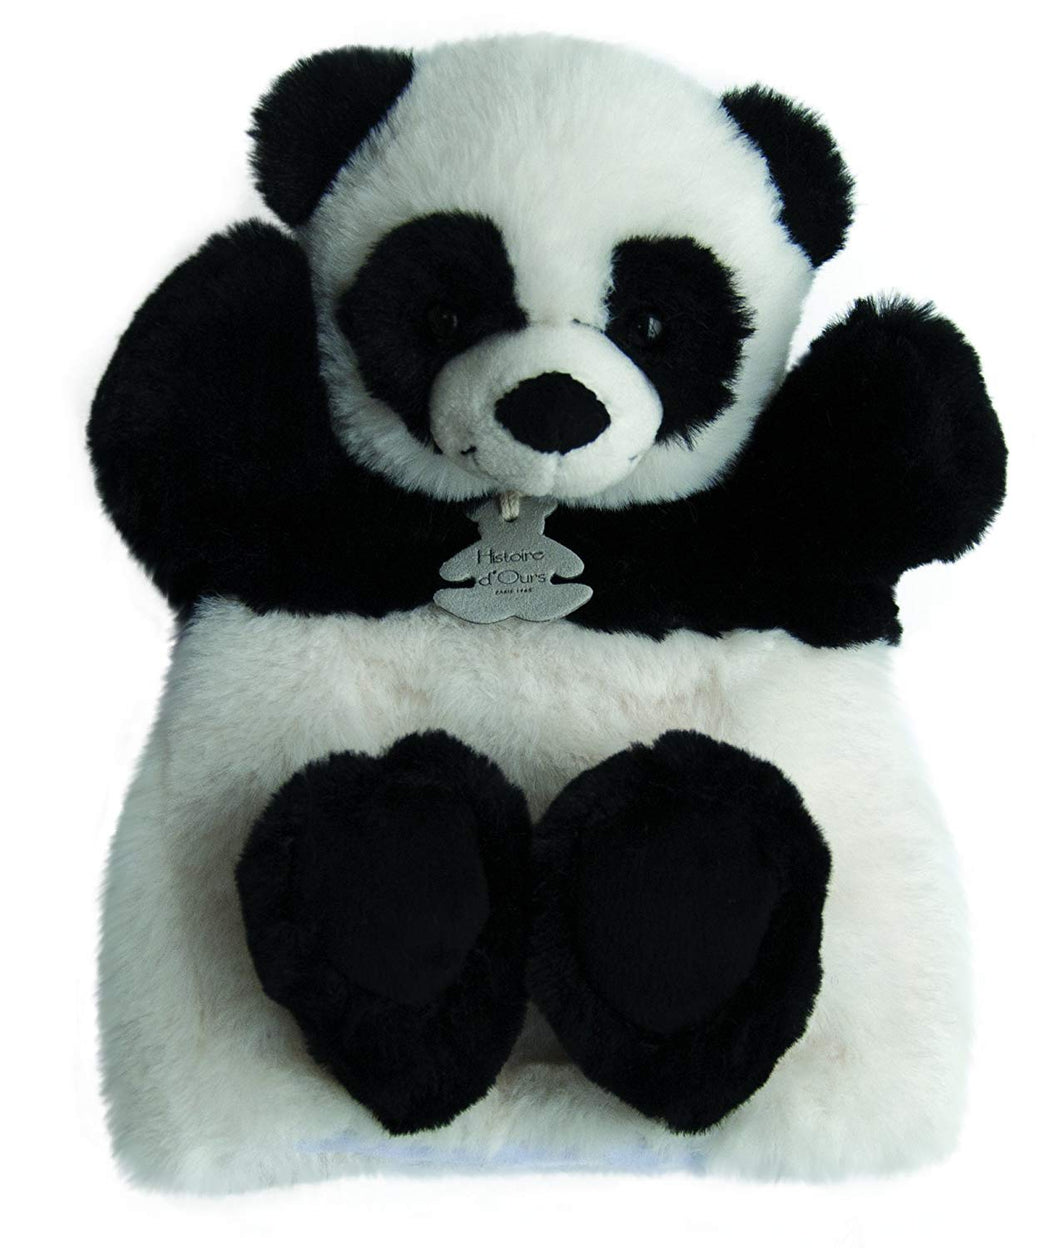 Histoire d'Ours, Oso Panda Marioneta Doudou 25 cm. - Doudou et Compagnie HO2595